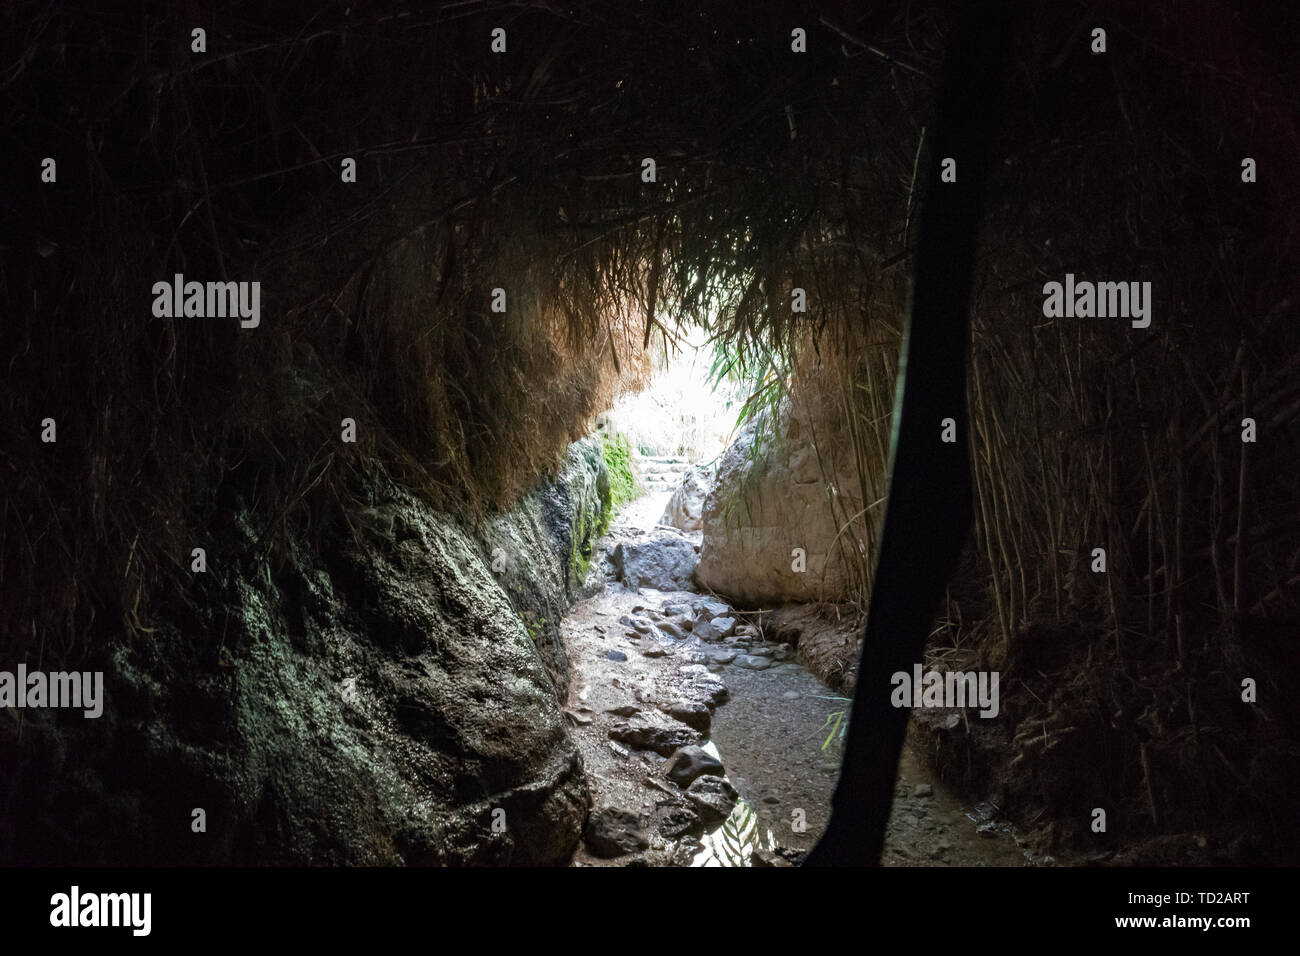 All'interno della grotta cupa umido con pareti in pietra e erba secca soffitto sorretto con bastone, il pavimento presenta delle pietre e acqua. Vuoto coperchio umana in una grotta Foto Stock